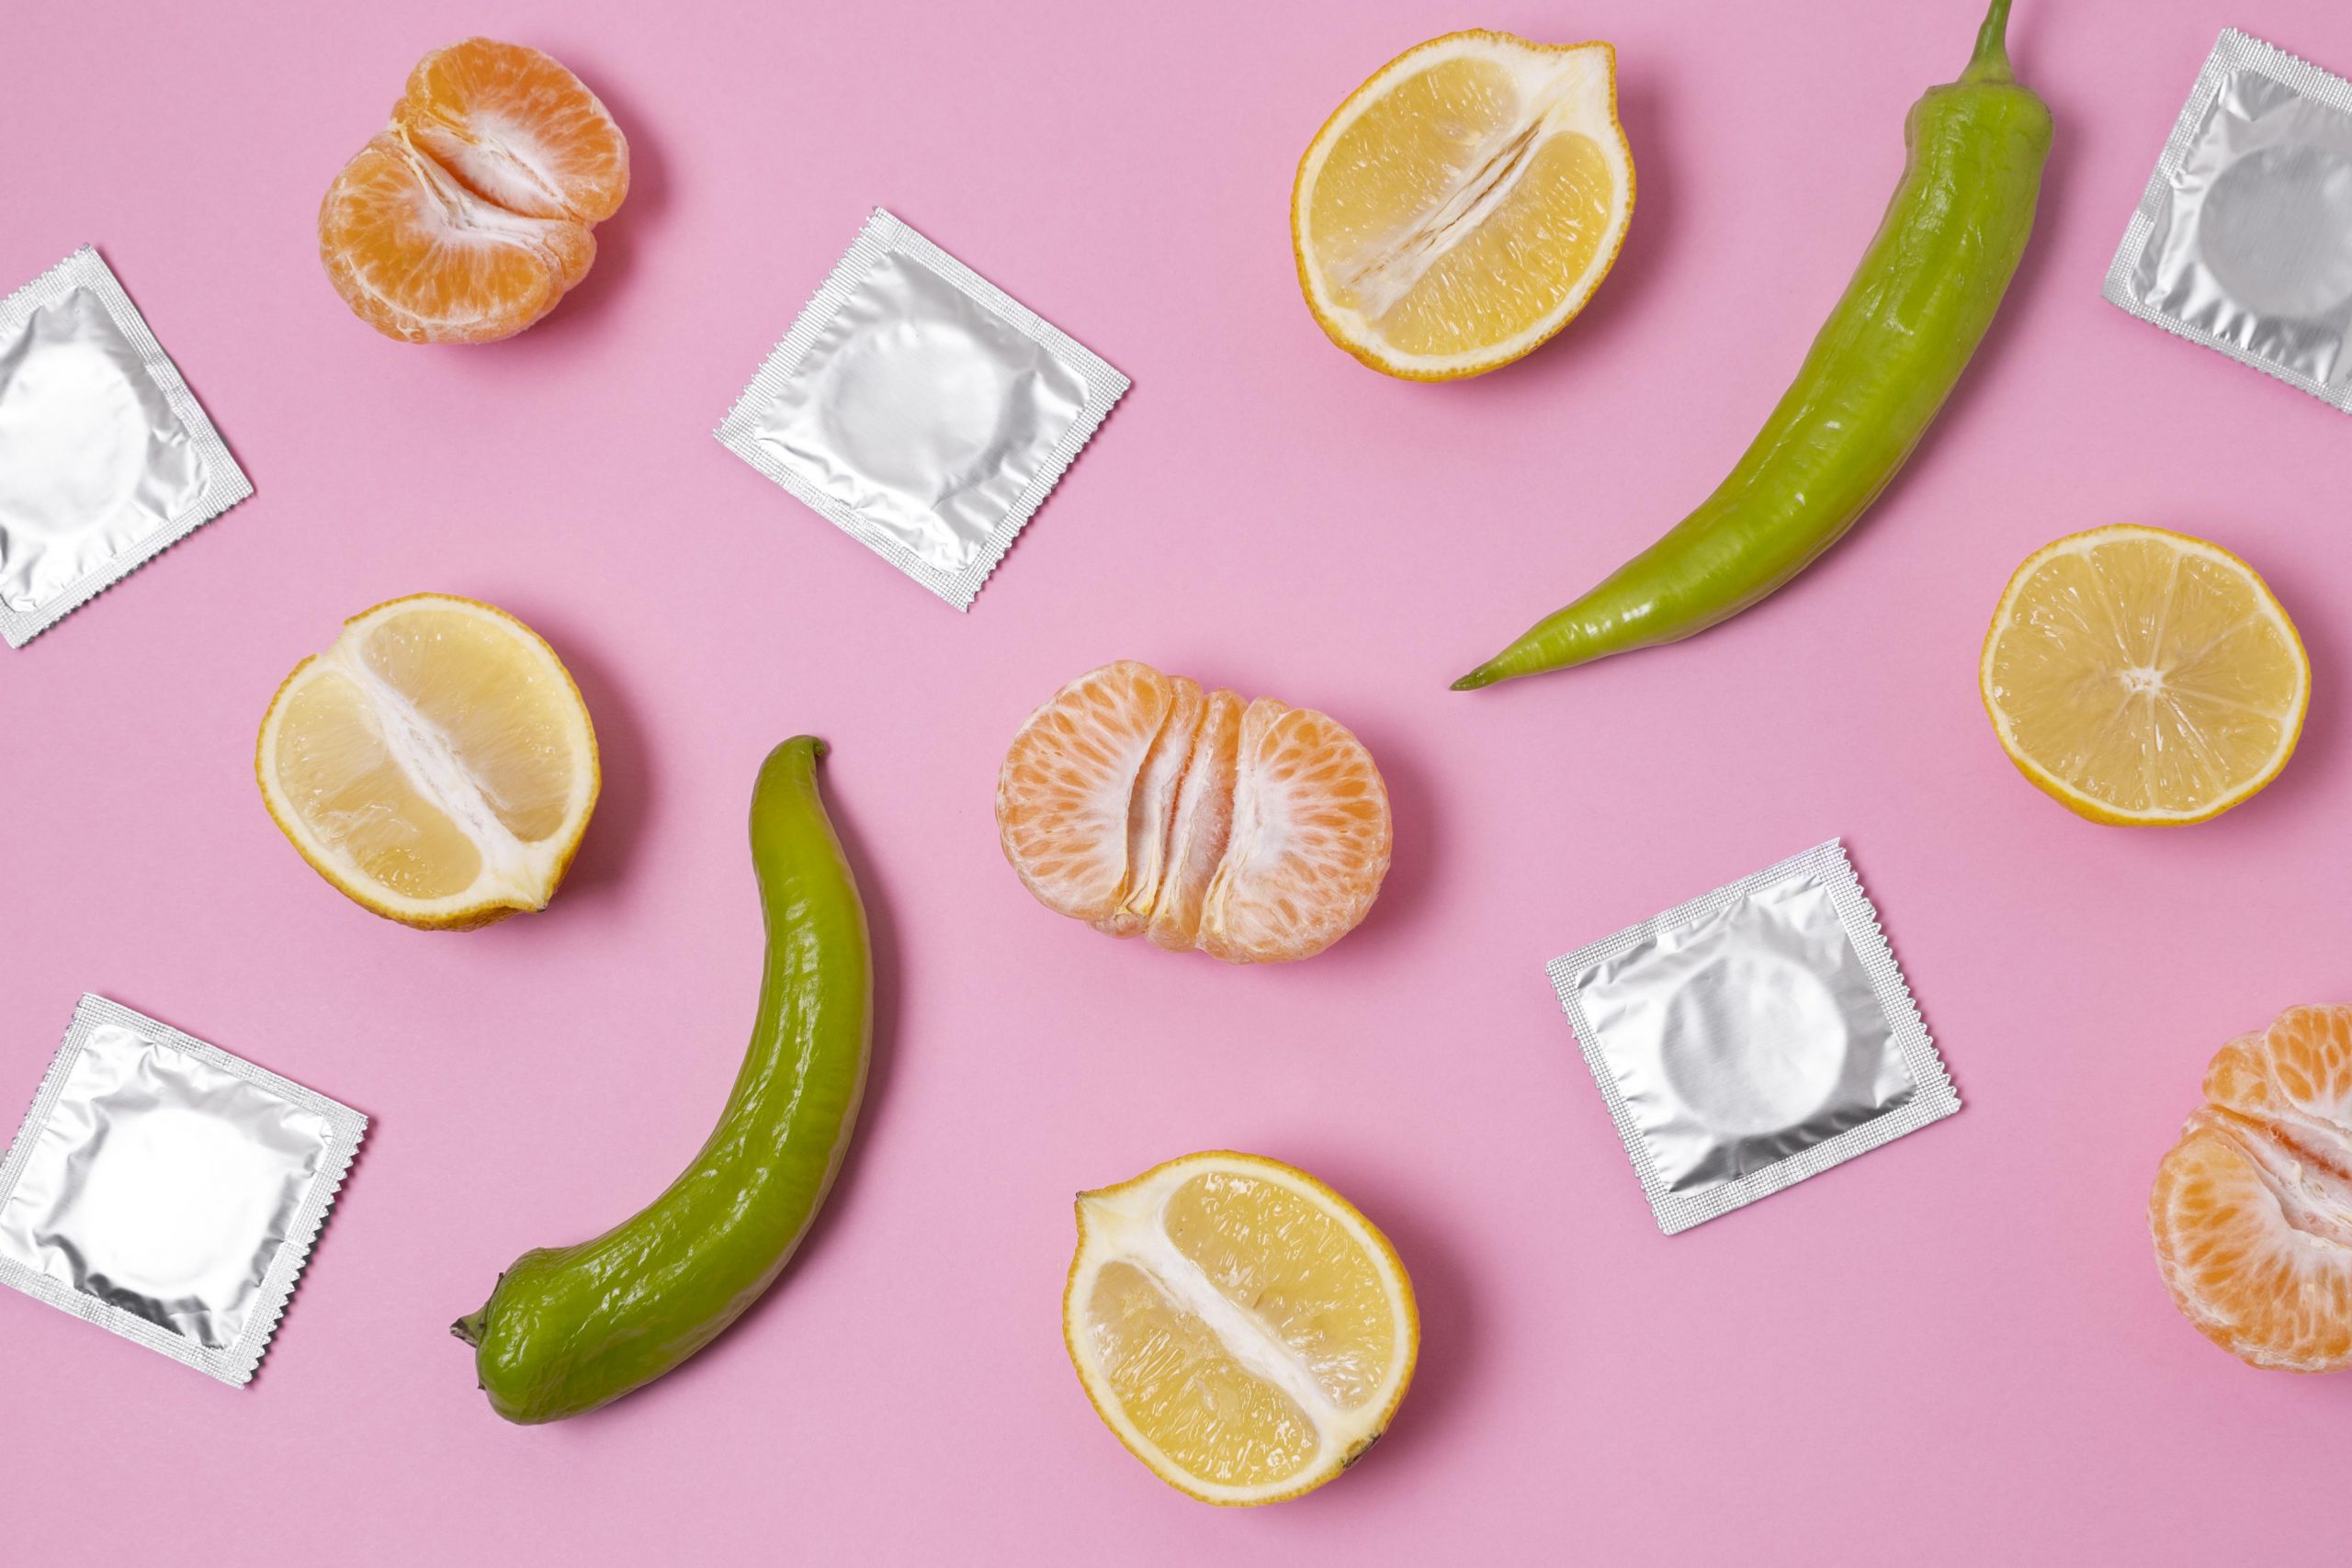 5 Jenis Kondom Yang Perlu Kamu Tahu